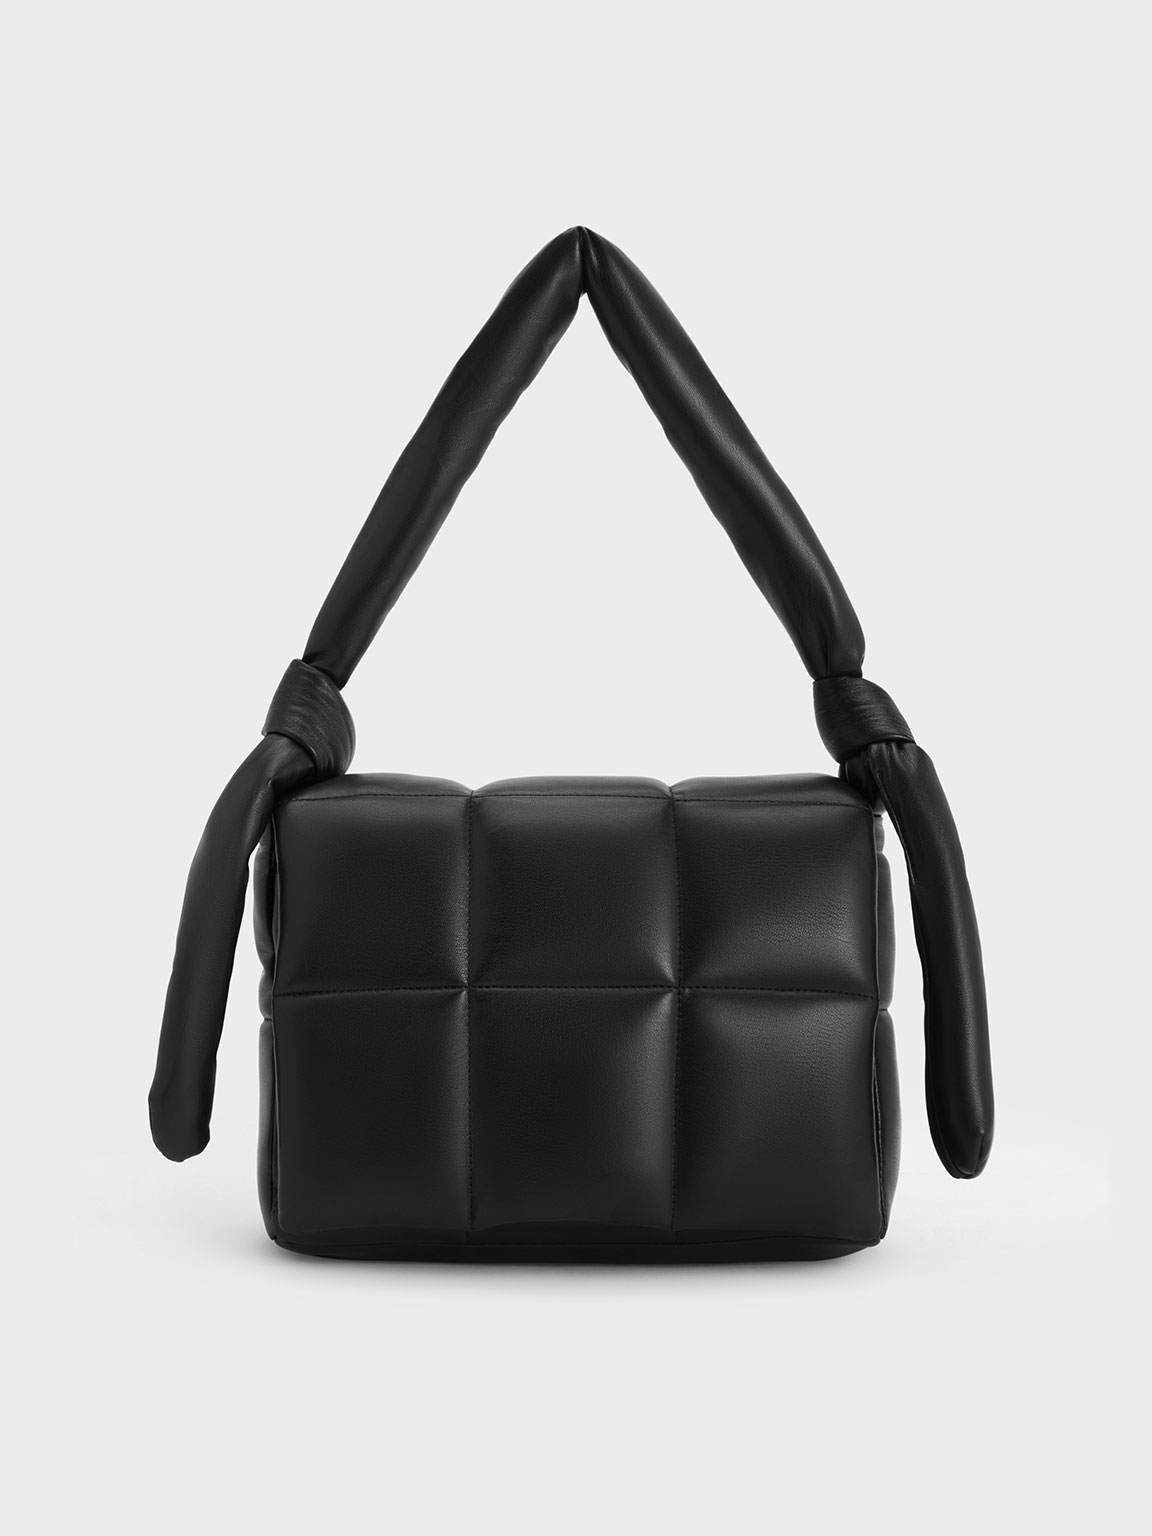 Fashion Copy Luxury Square Box Handbags Black Colorful Crystal